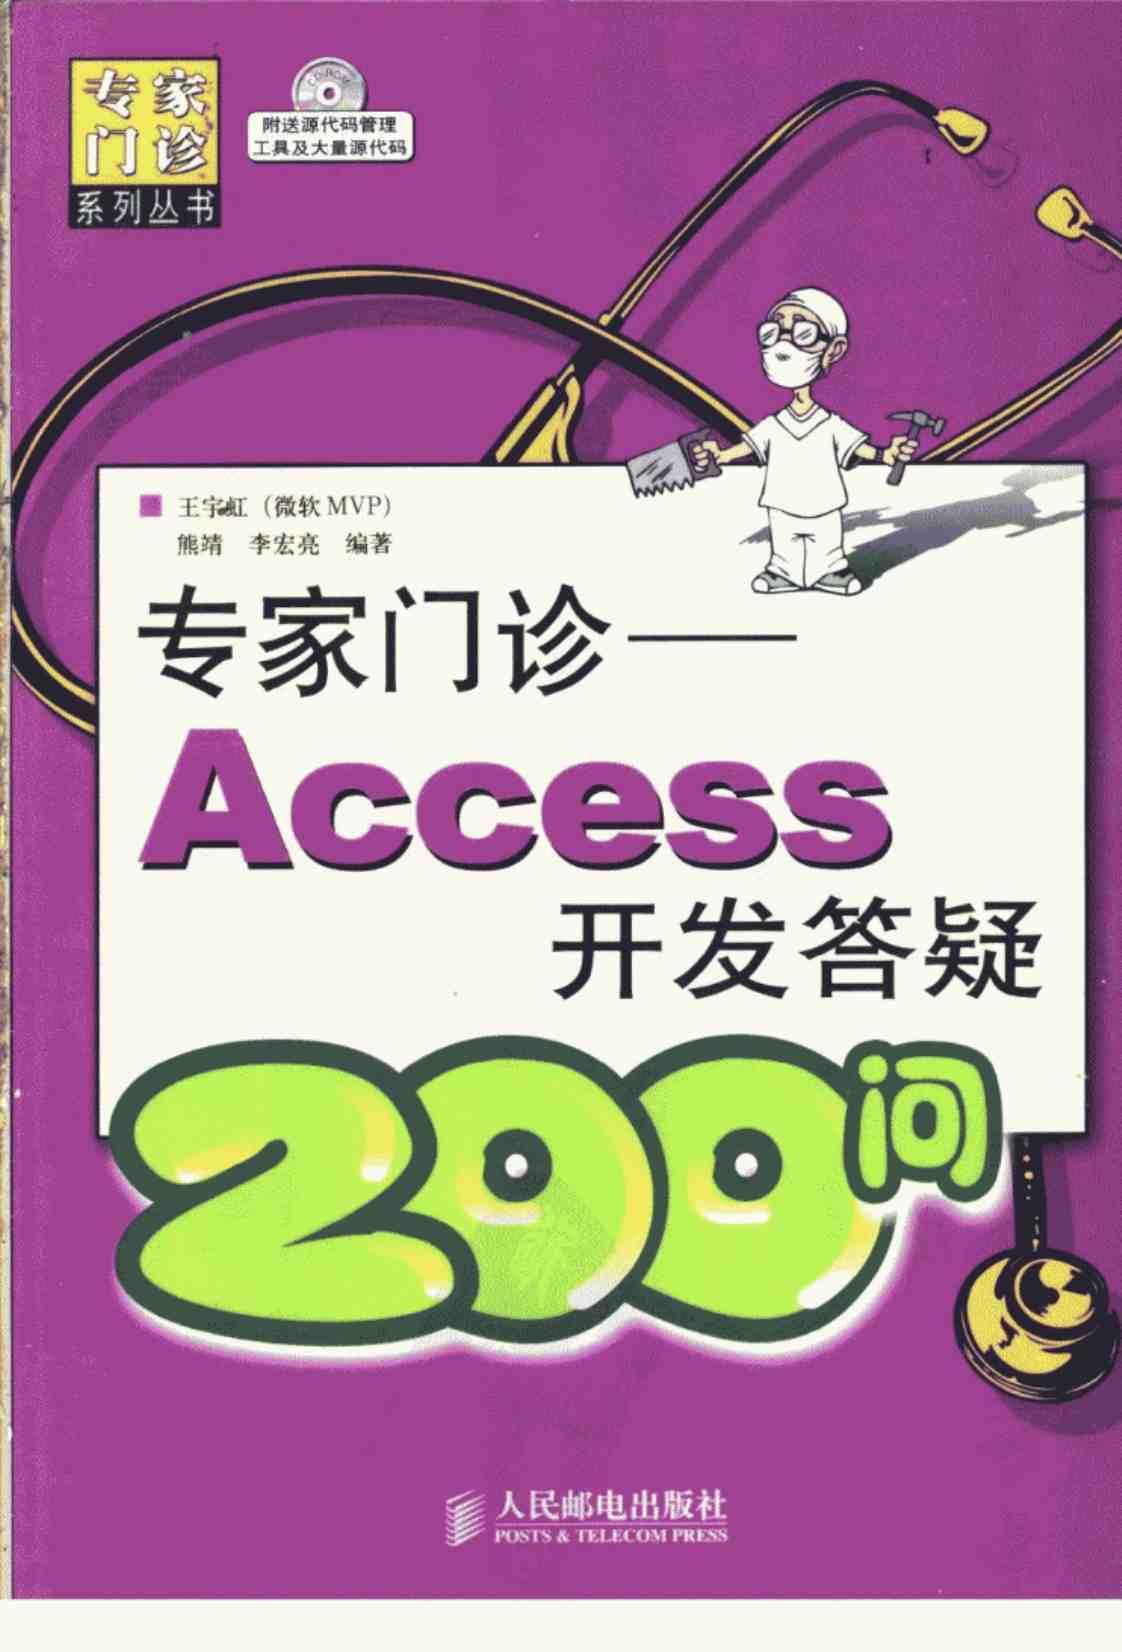 [专家门诊–Access开发答疑200问][王宇虹、熊靖、李宏亮(编著)]高清PDF电子书下载